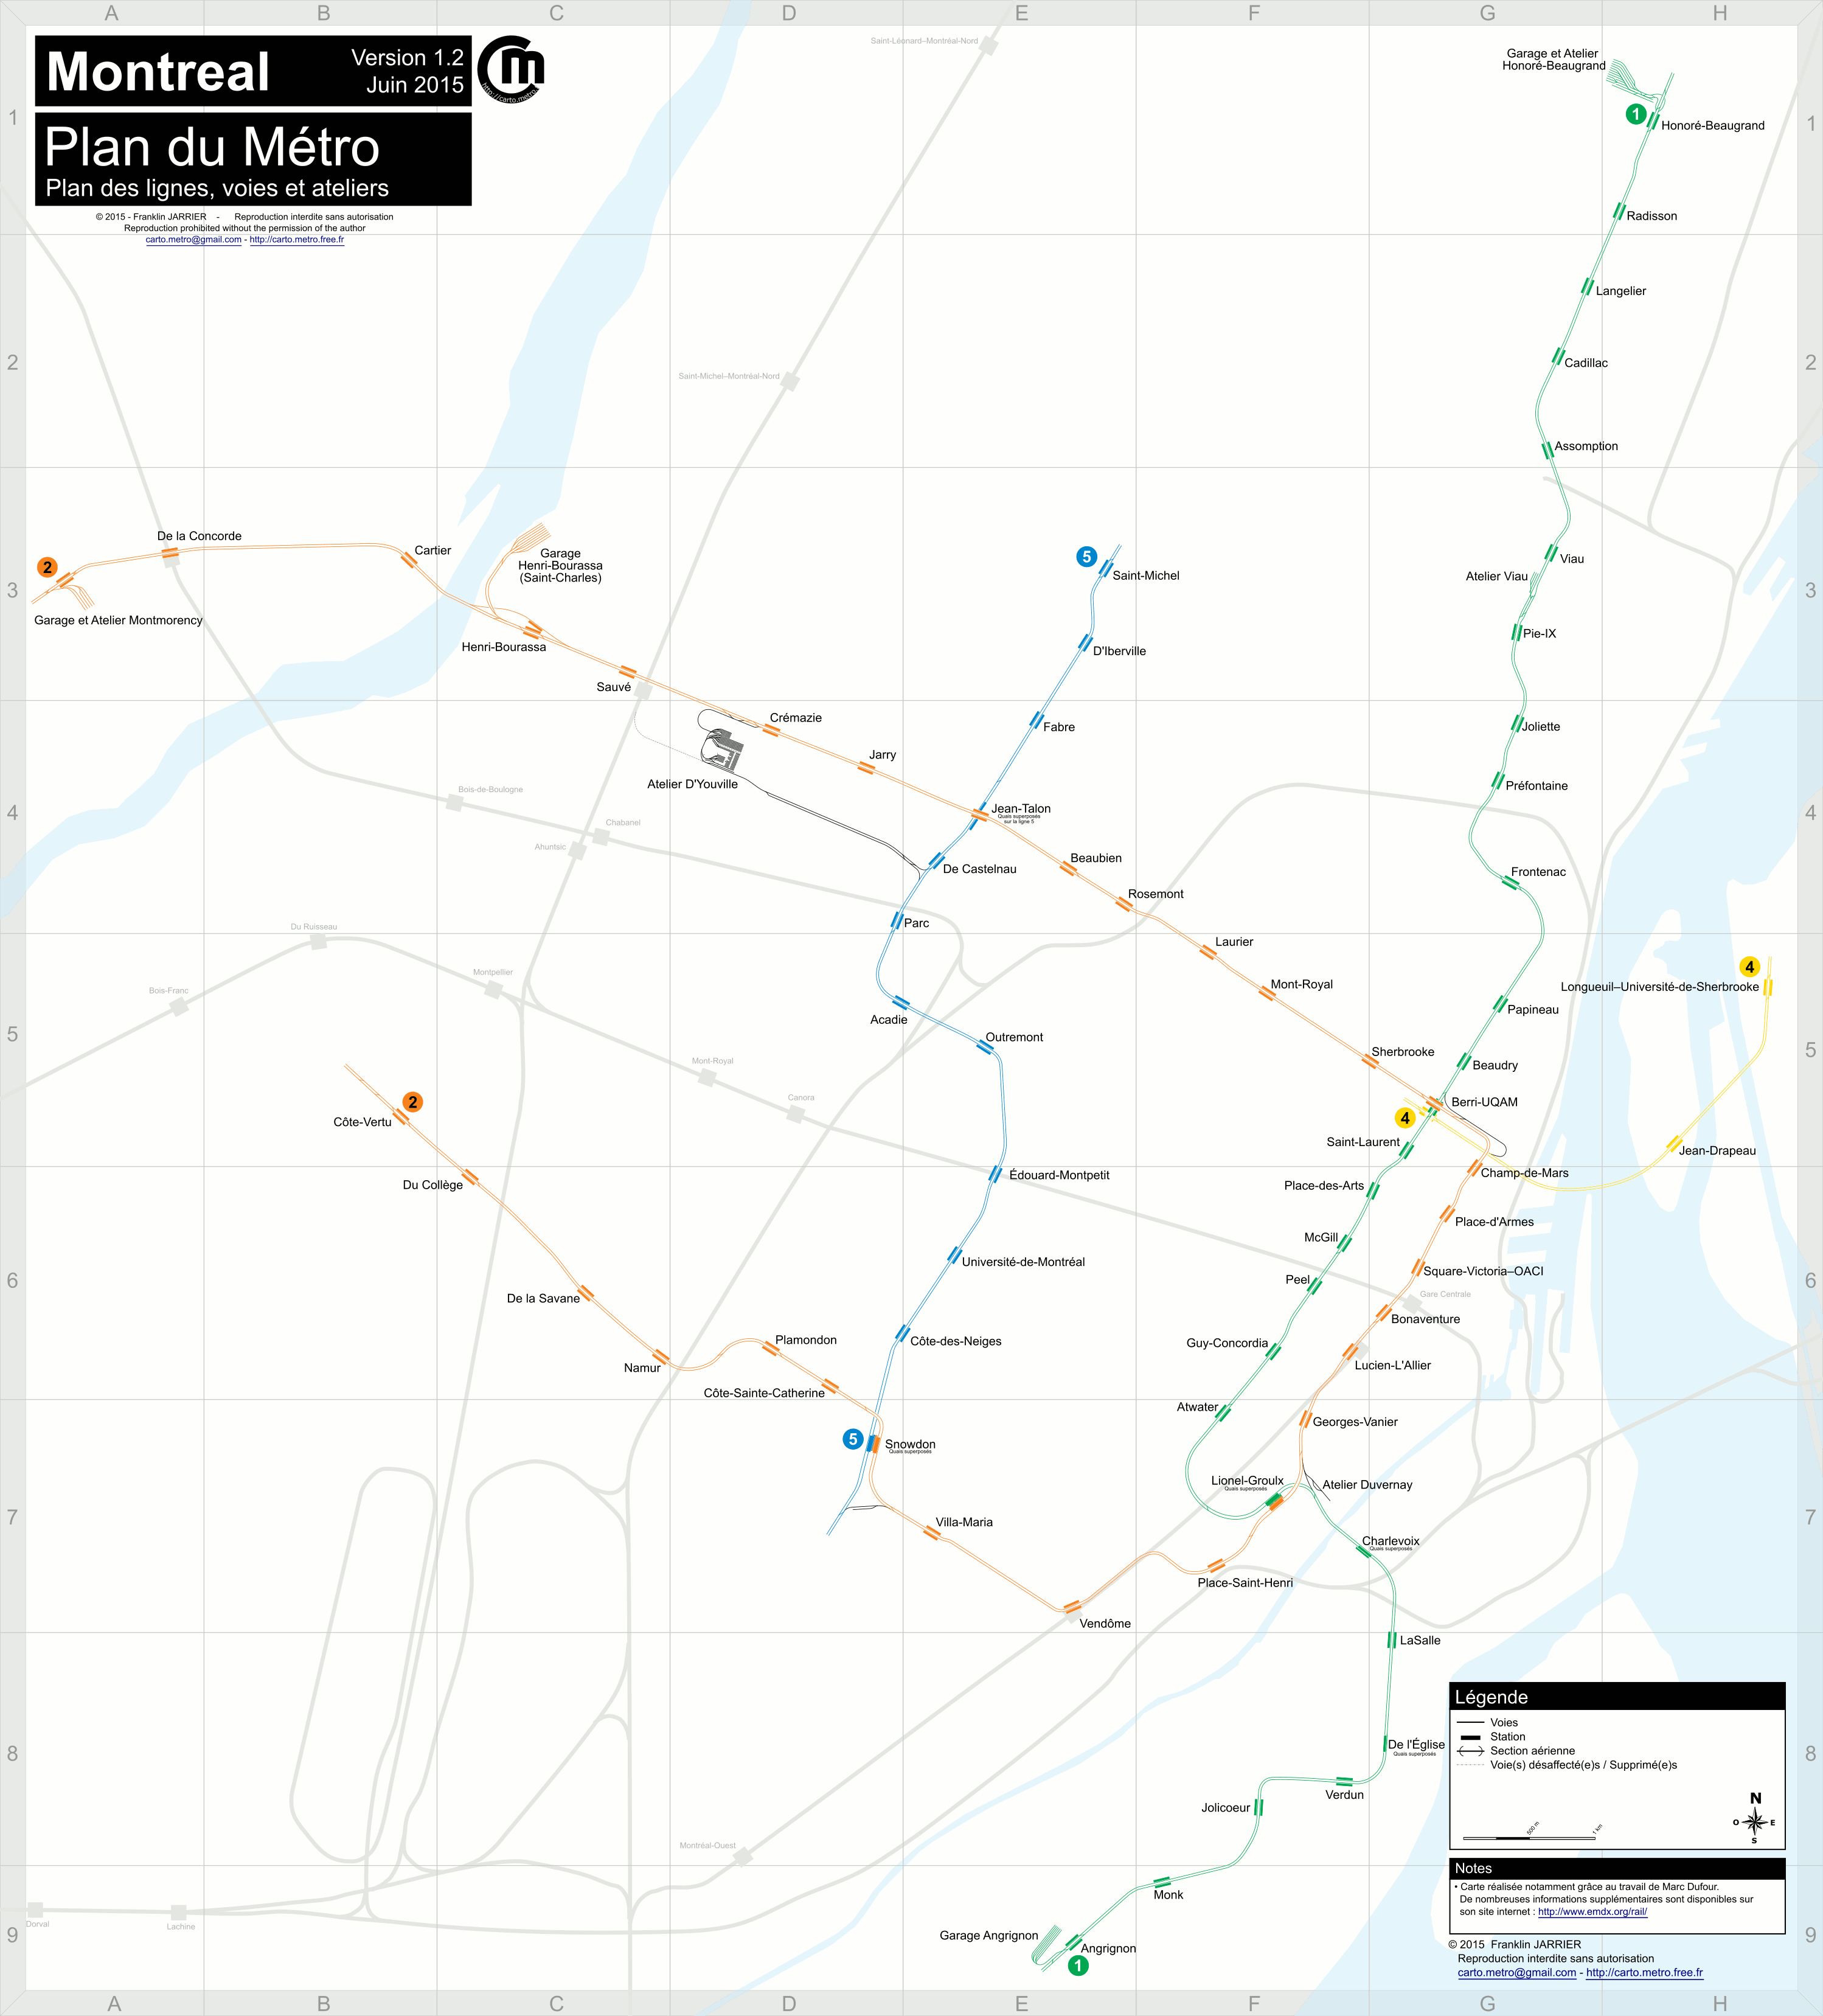 Монреаль — Схема метрополитена